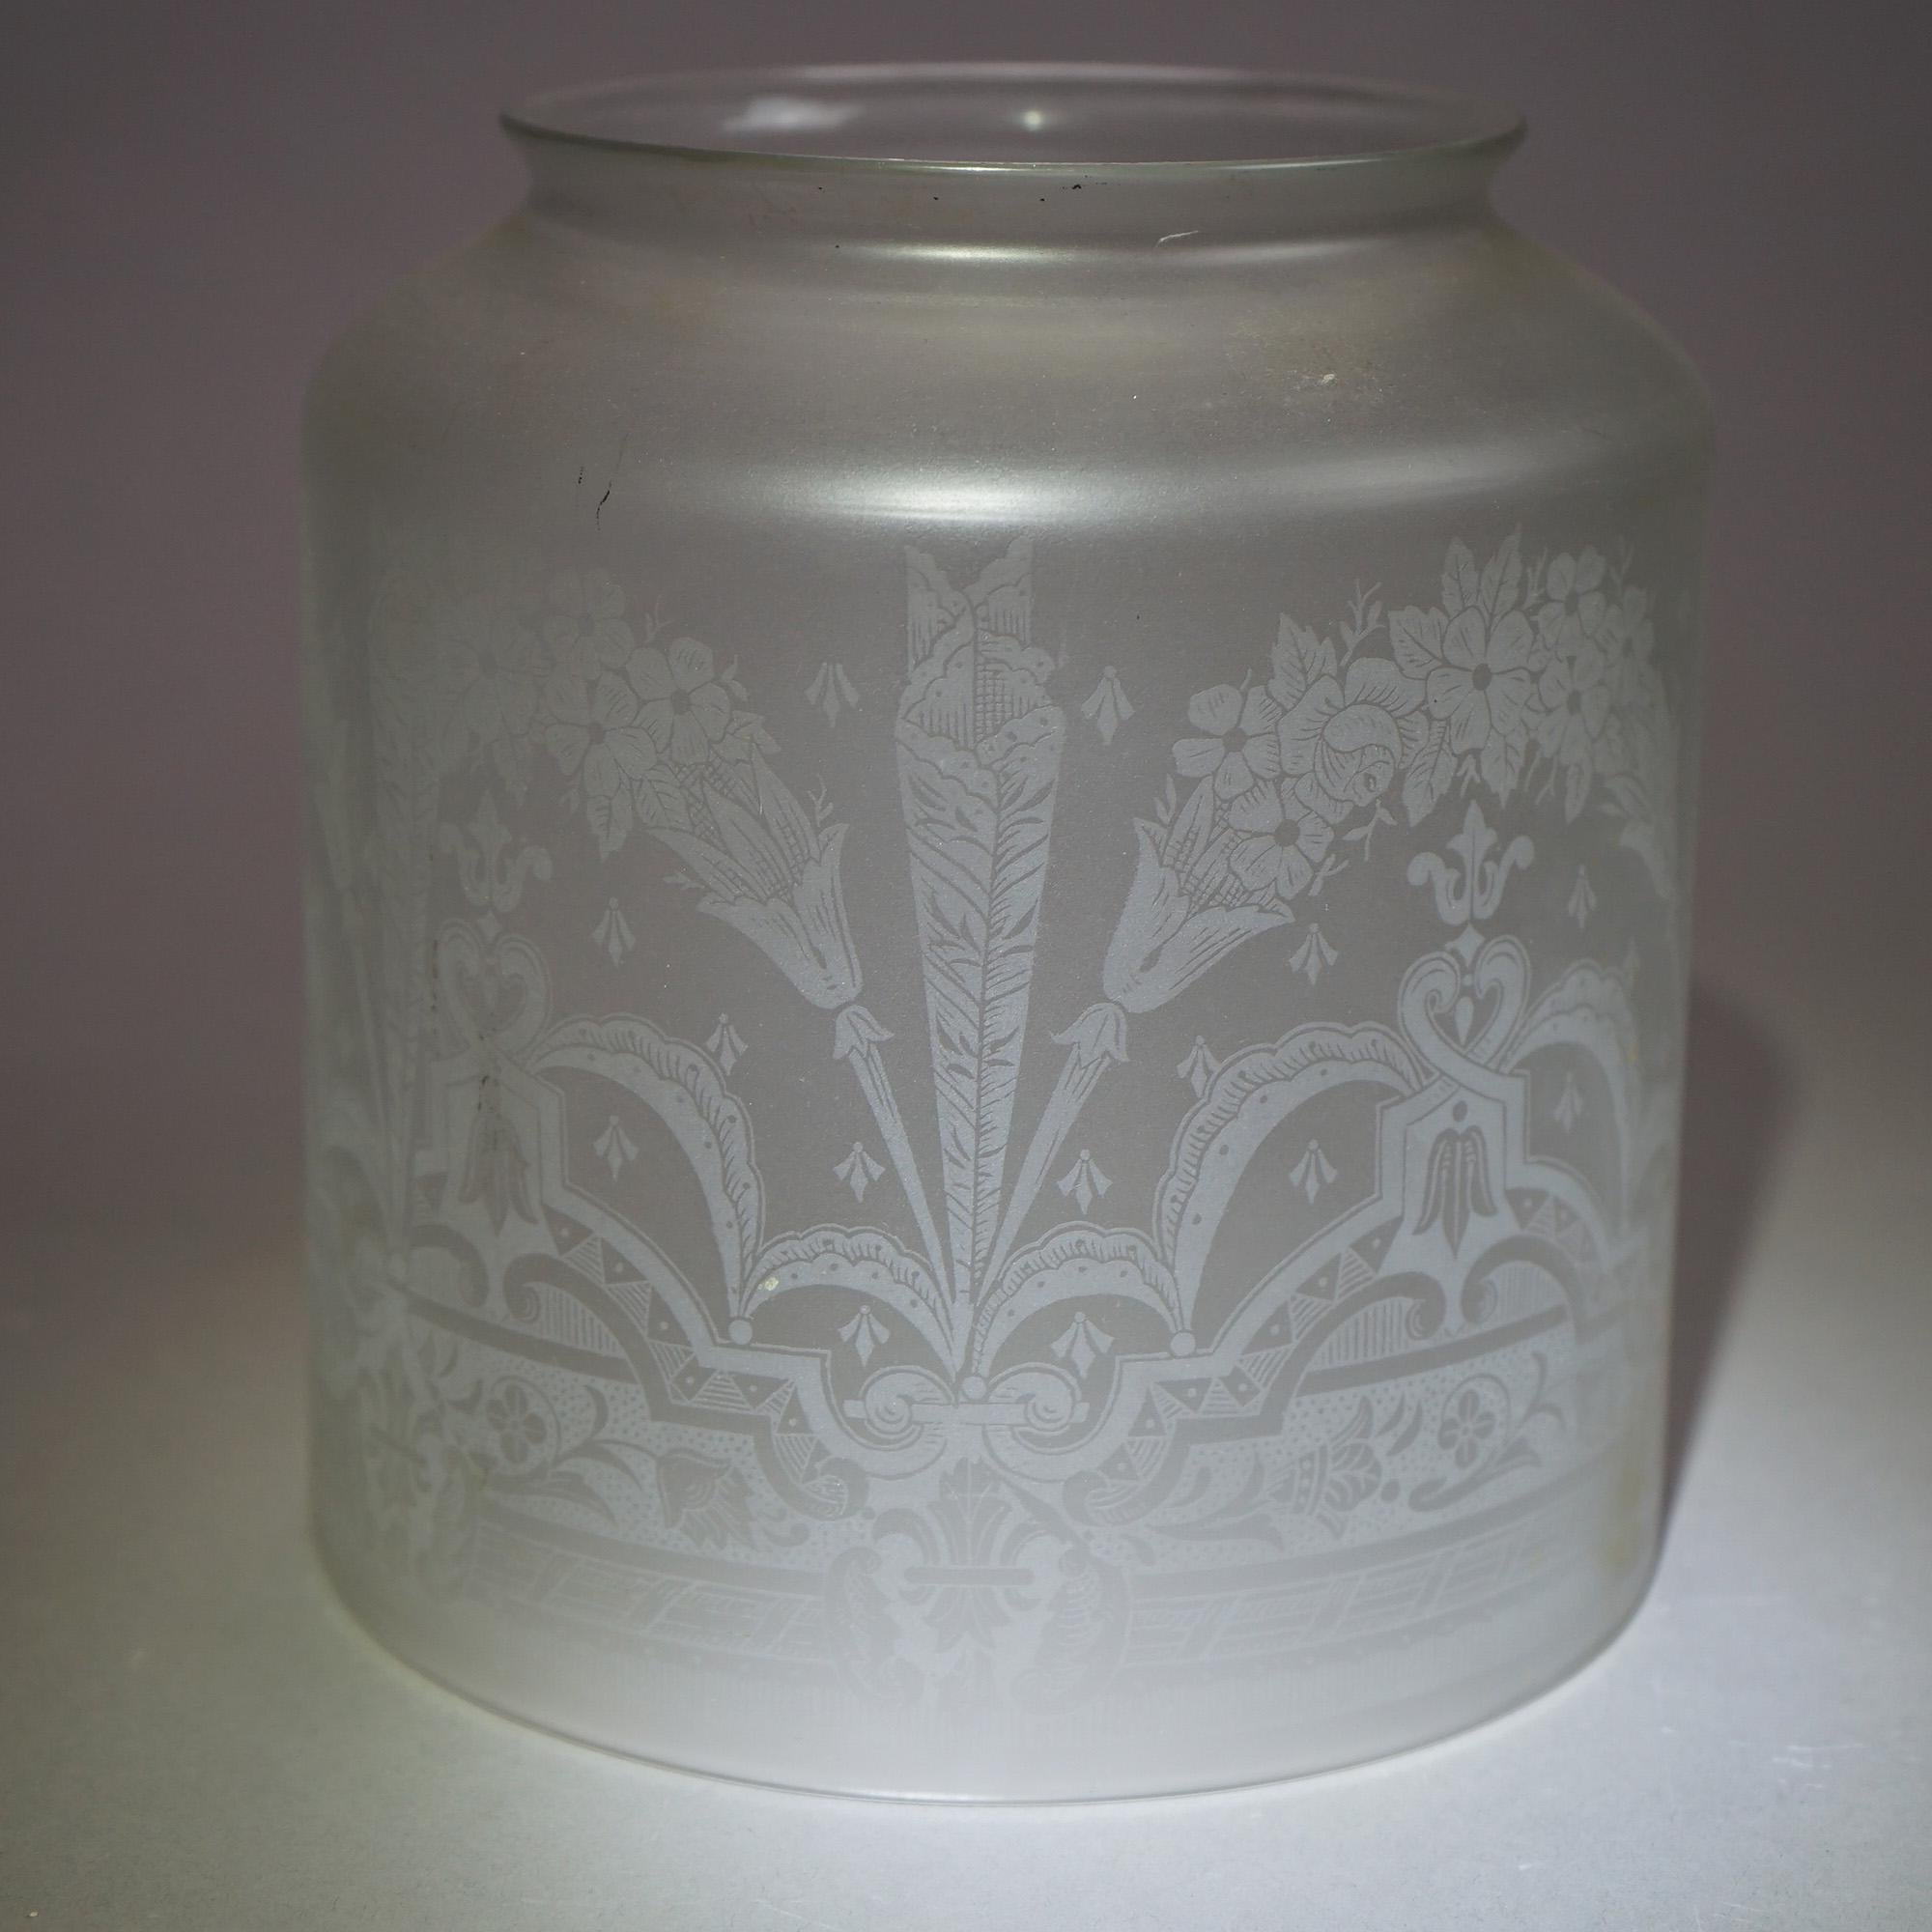 Abat-jour en verre dépoli de forme cylindrique avec un motif floral et feuillu gravé, vers 1890.

Mesures - 7,25 